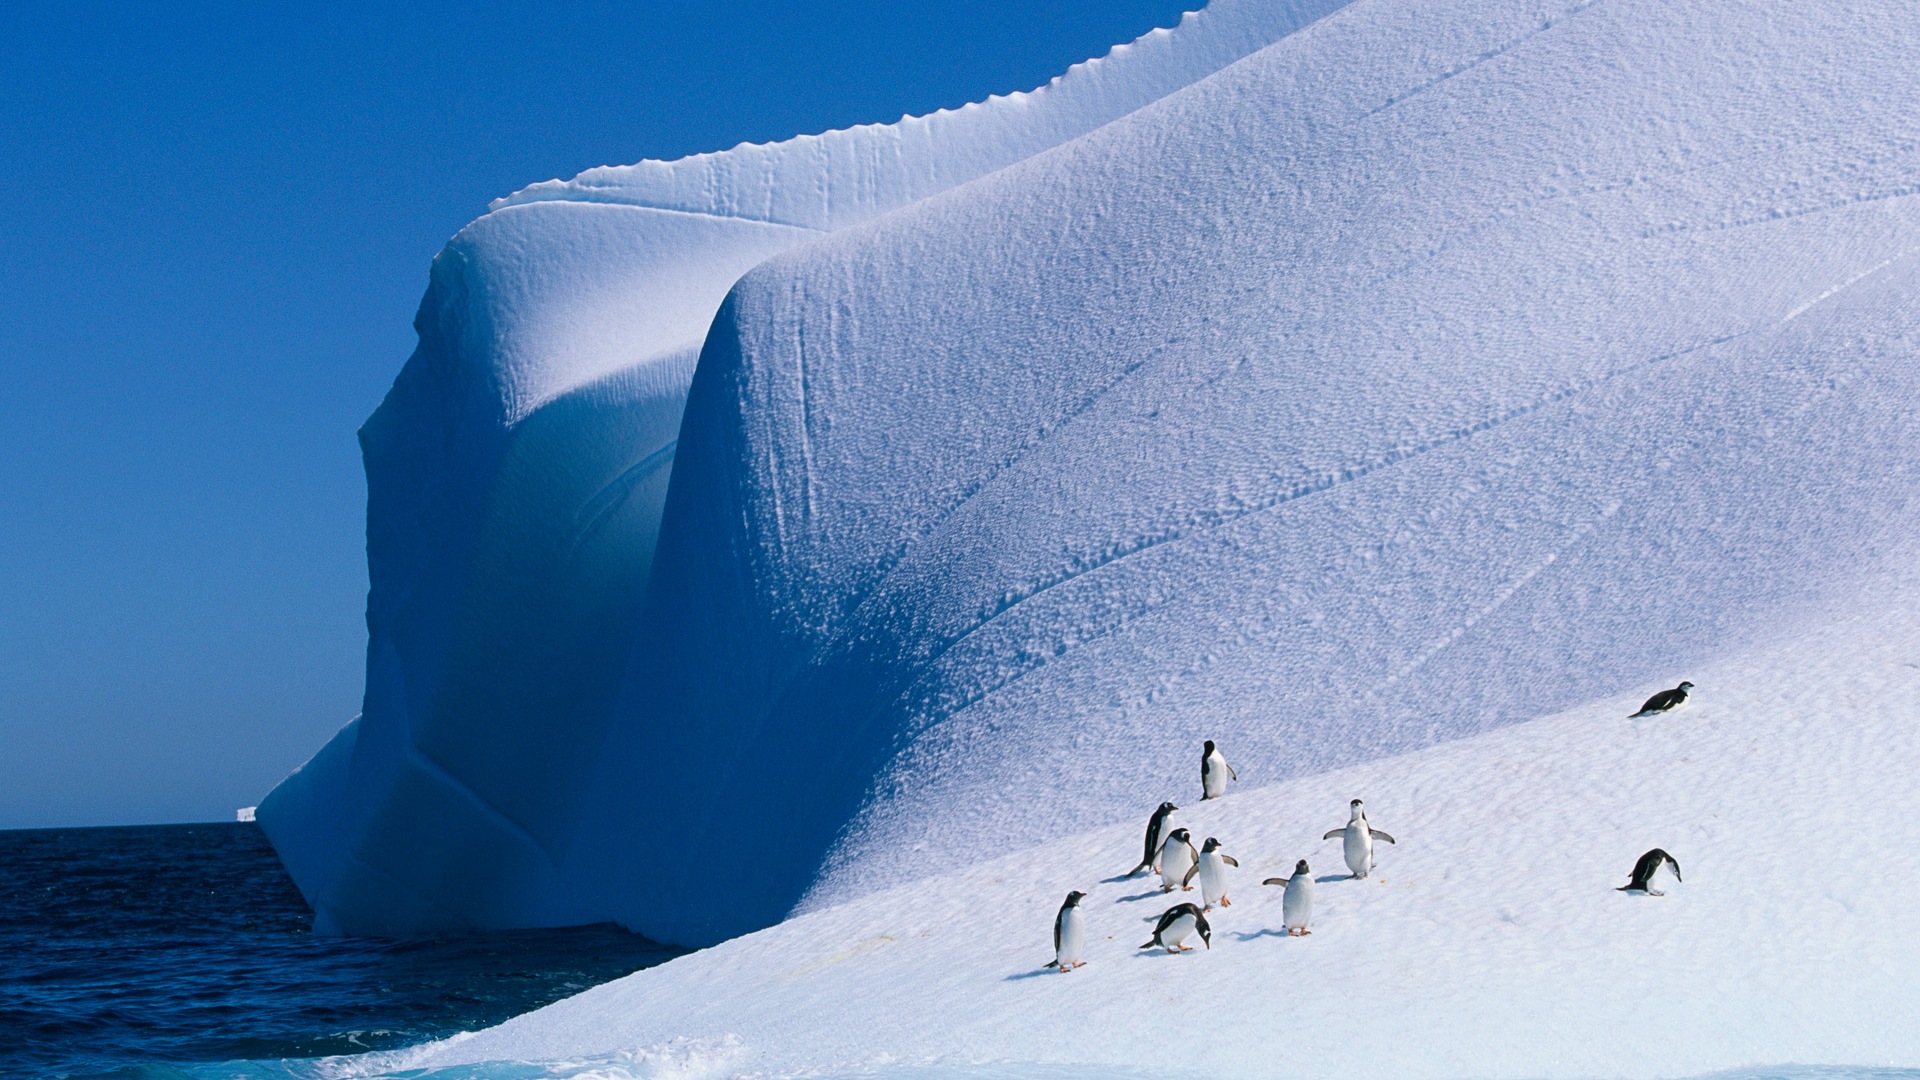 Windows 8 Wallpaper: Antarktis, Schnee Landschaft der Antarktis Pinguine #1 - 1920x1080